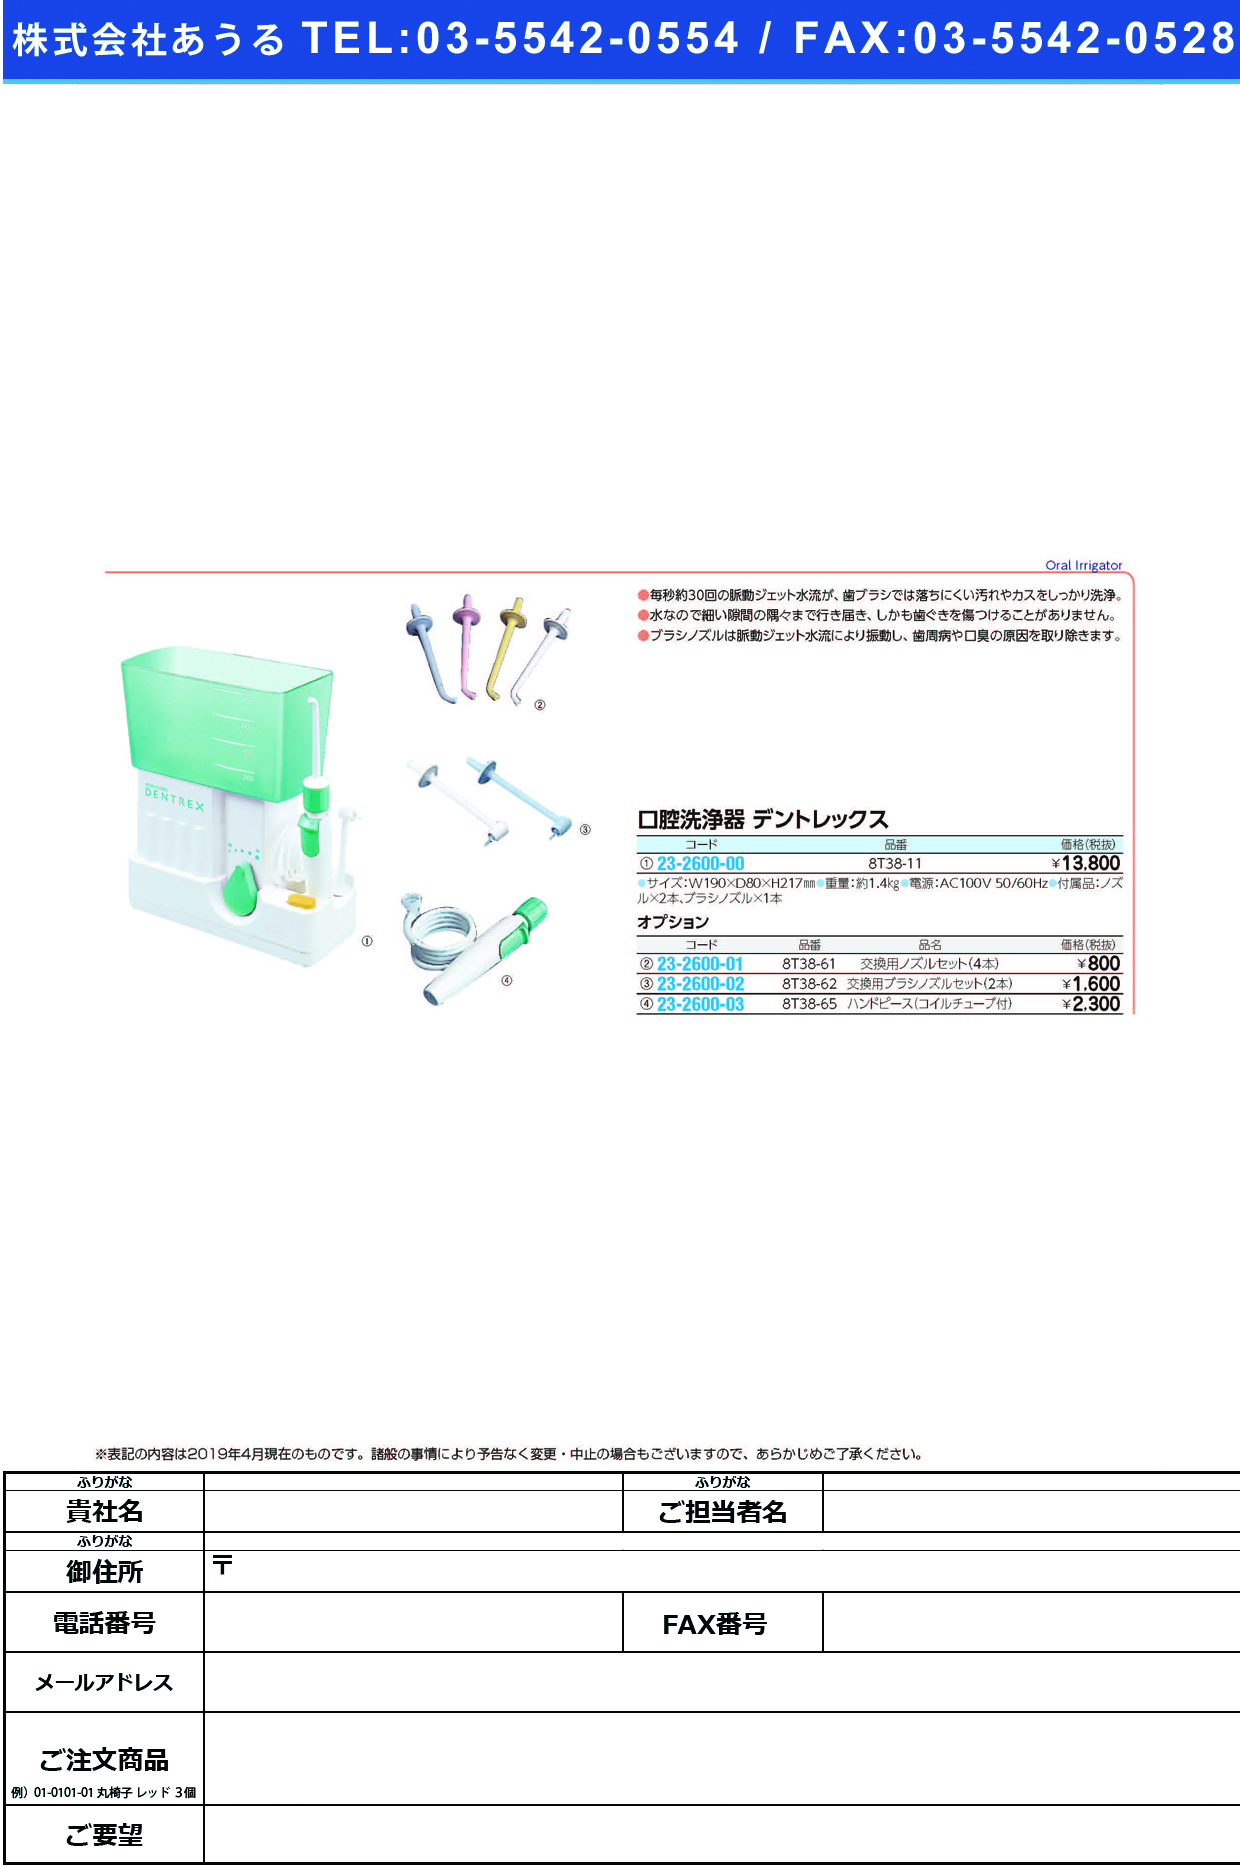 (23-2600-03)デントレックス用ハンドピース 8T38-65(ｺｲﾙﾁｭｰﾌﾞﾂｷ) ﾃﾞﾝﾄﾚｯｸｽﾖｳﾊﾝﾄﾞﾋﾟｰｽ【1台単位】【2019年カタログ商品】